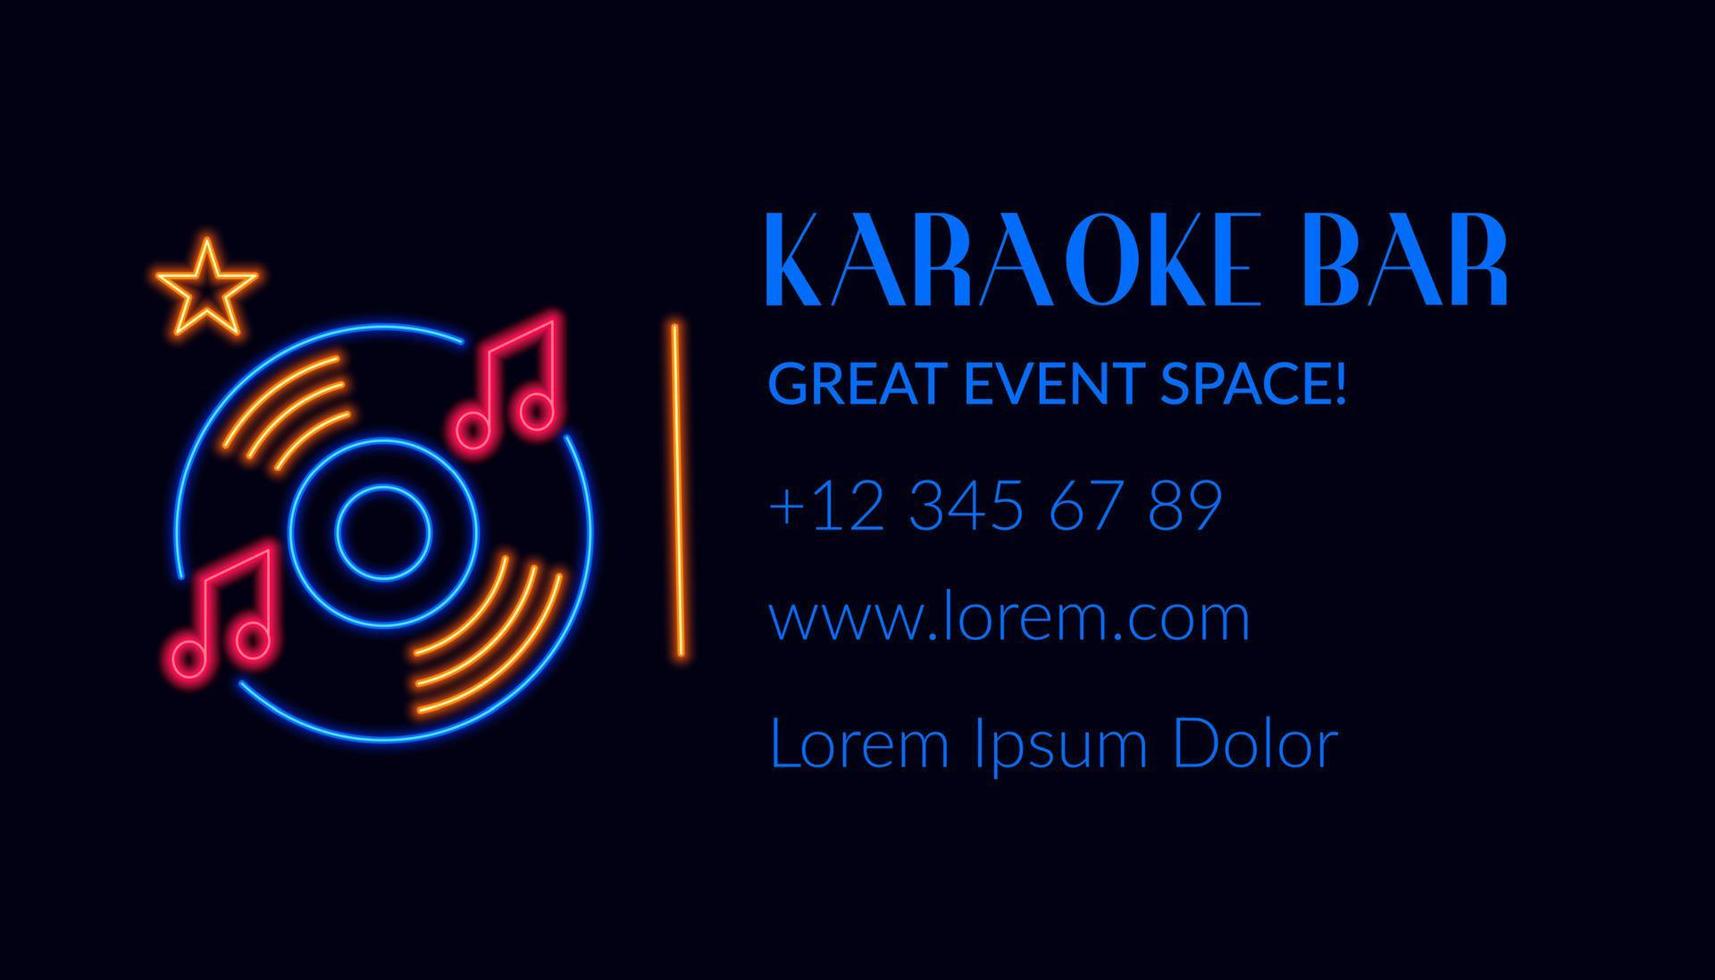 Karaoke-Bar, Visitenkarte mit Logo und Infos vektor